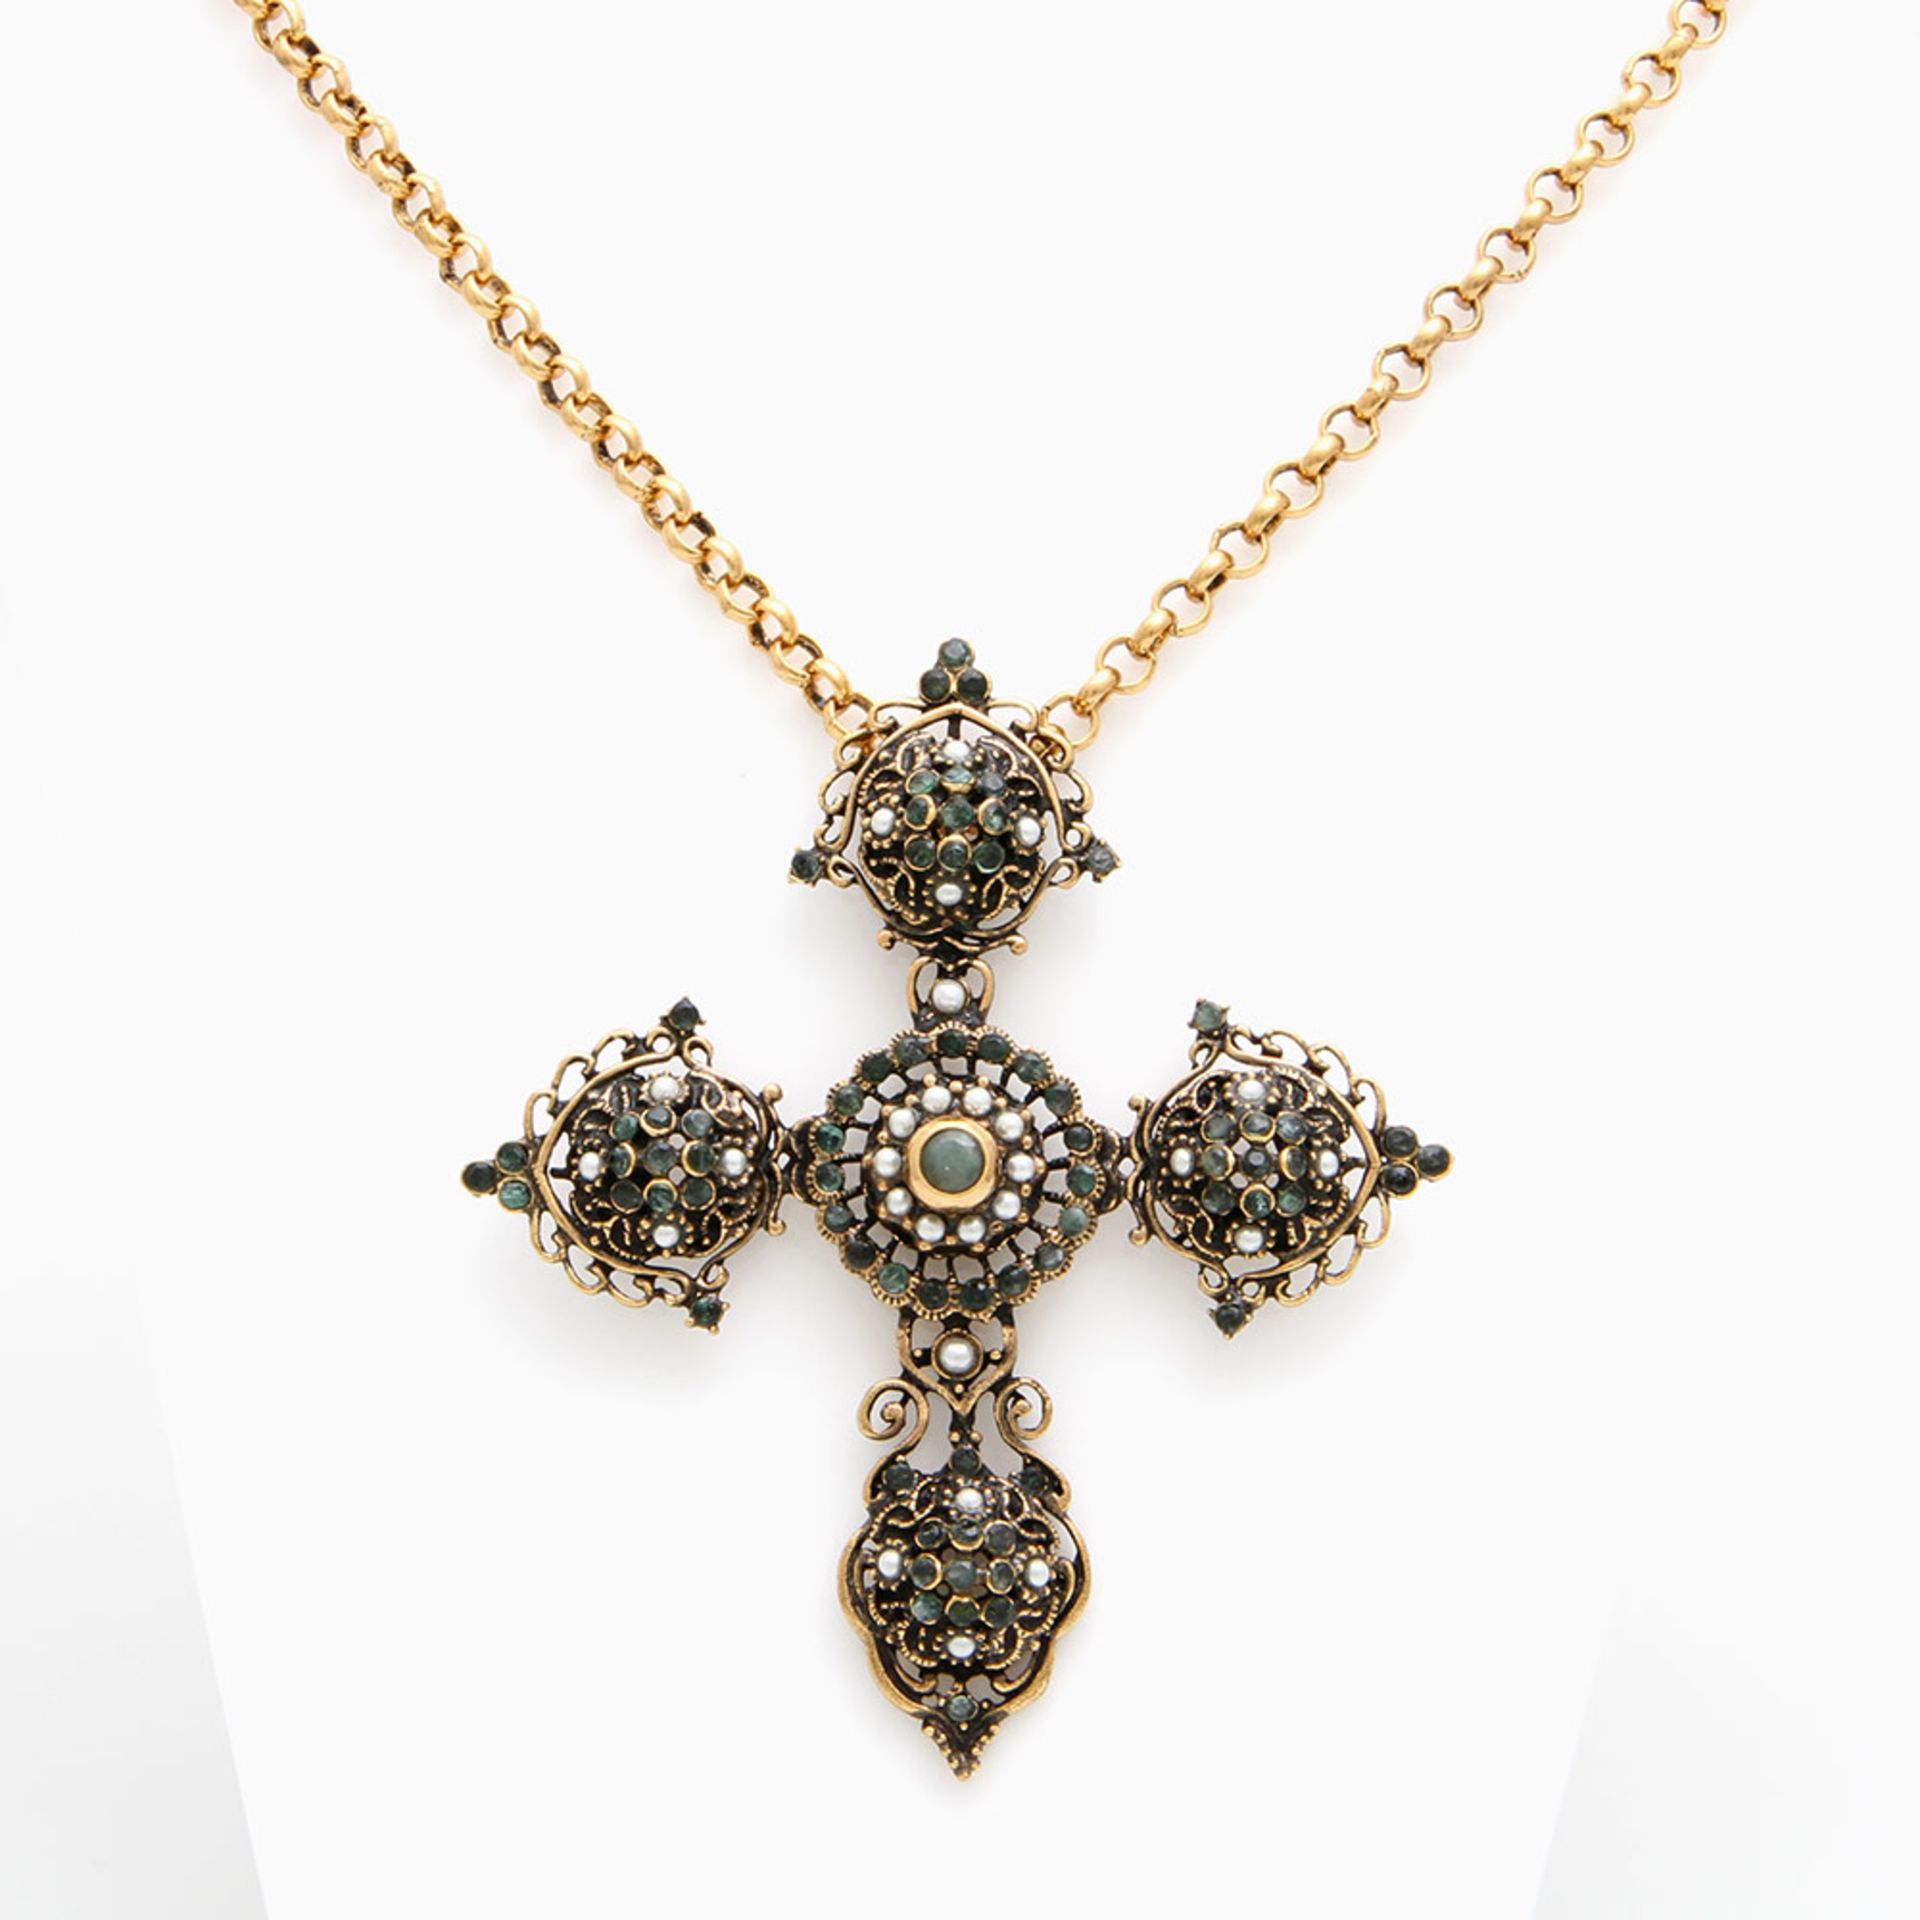 Auffälliges Kreuz mit Kette, Modeschmuck. Kreuz besetzt mit Imitationsperlen und grünen Steinen.